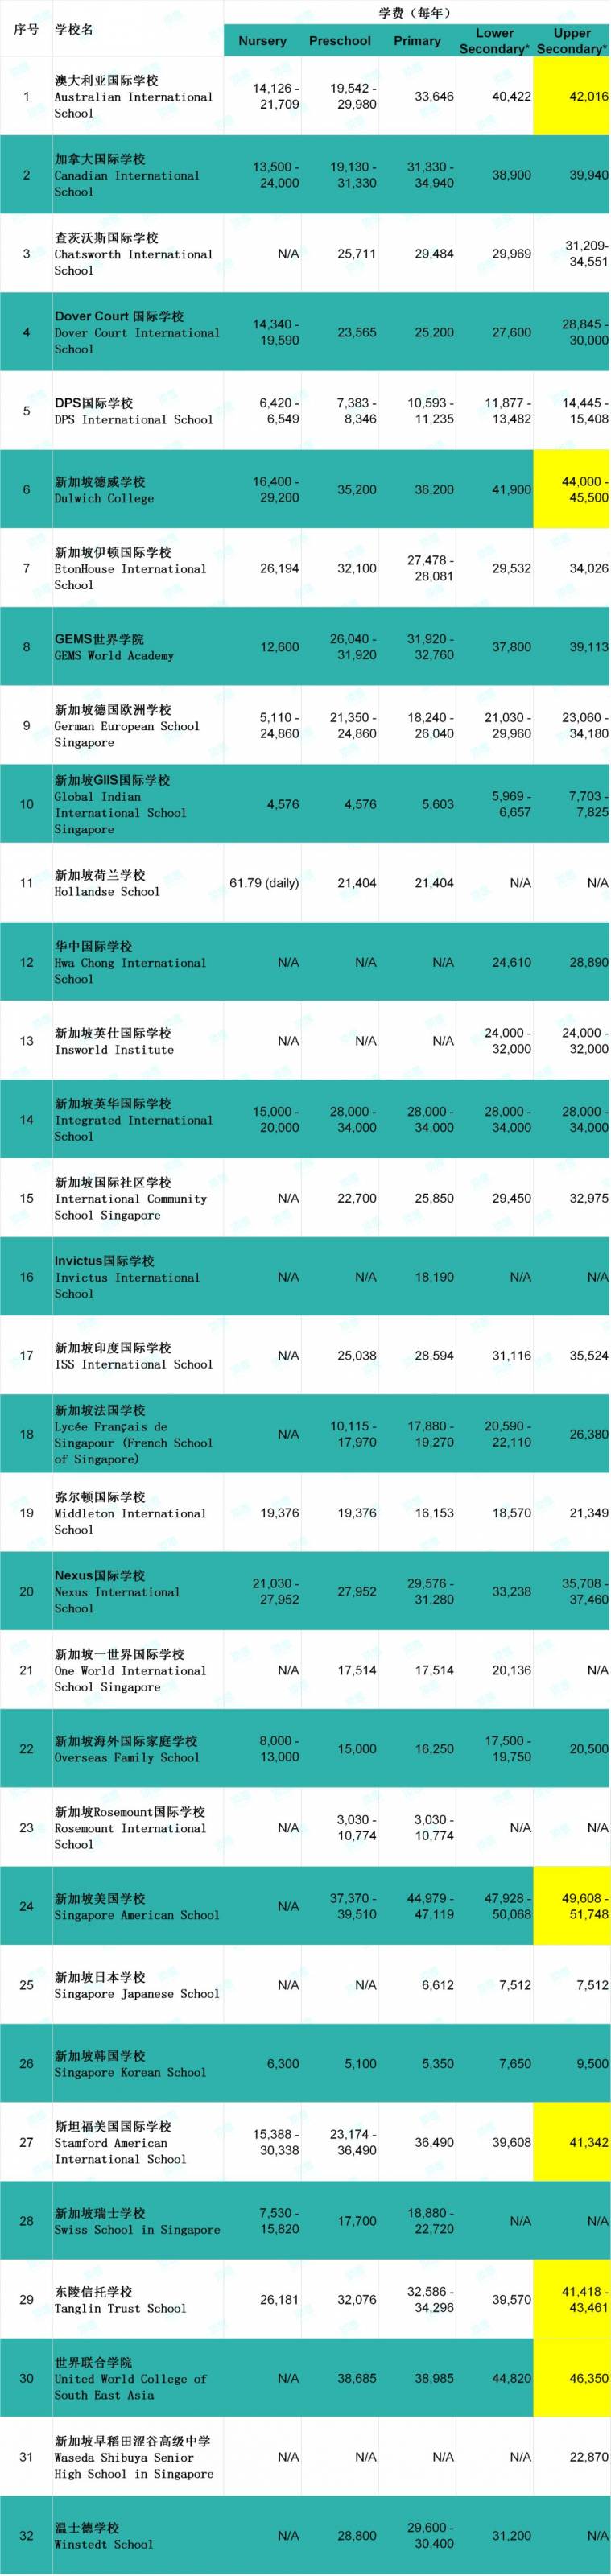 沒想到吧，新加坡的國際學校竟然比中國的還便宜